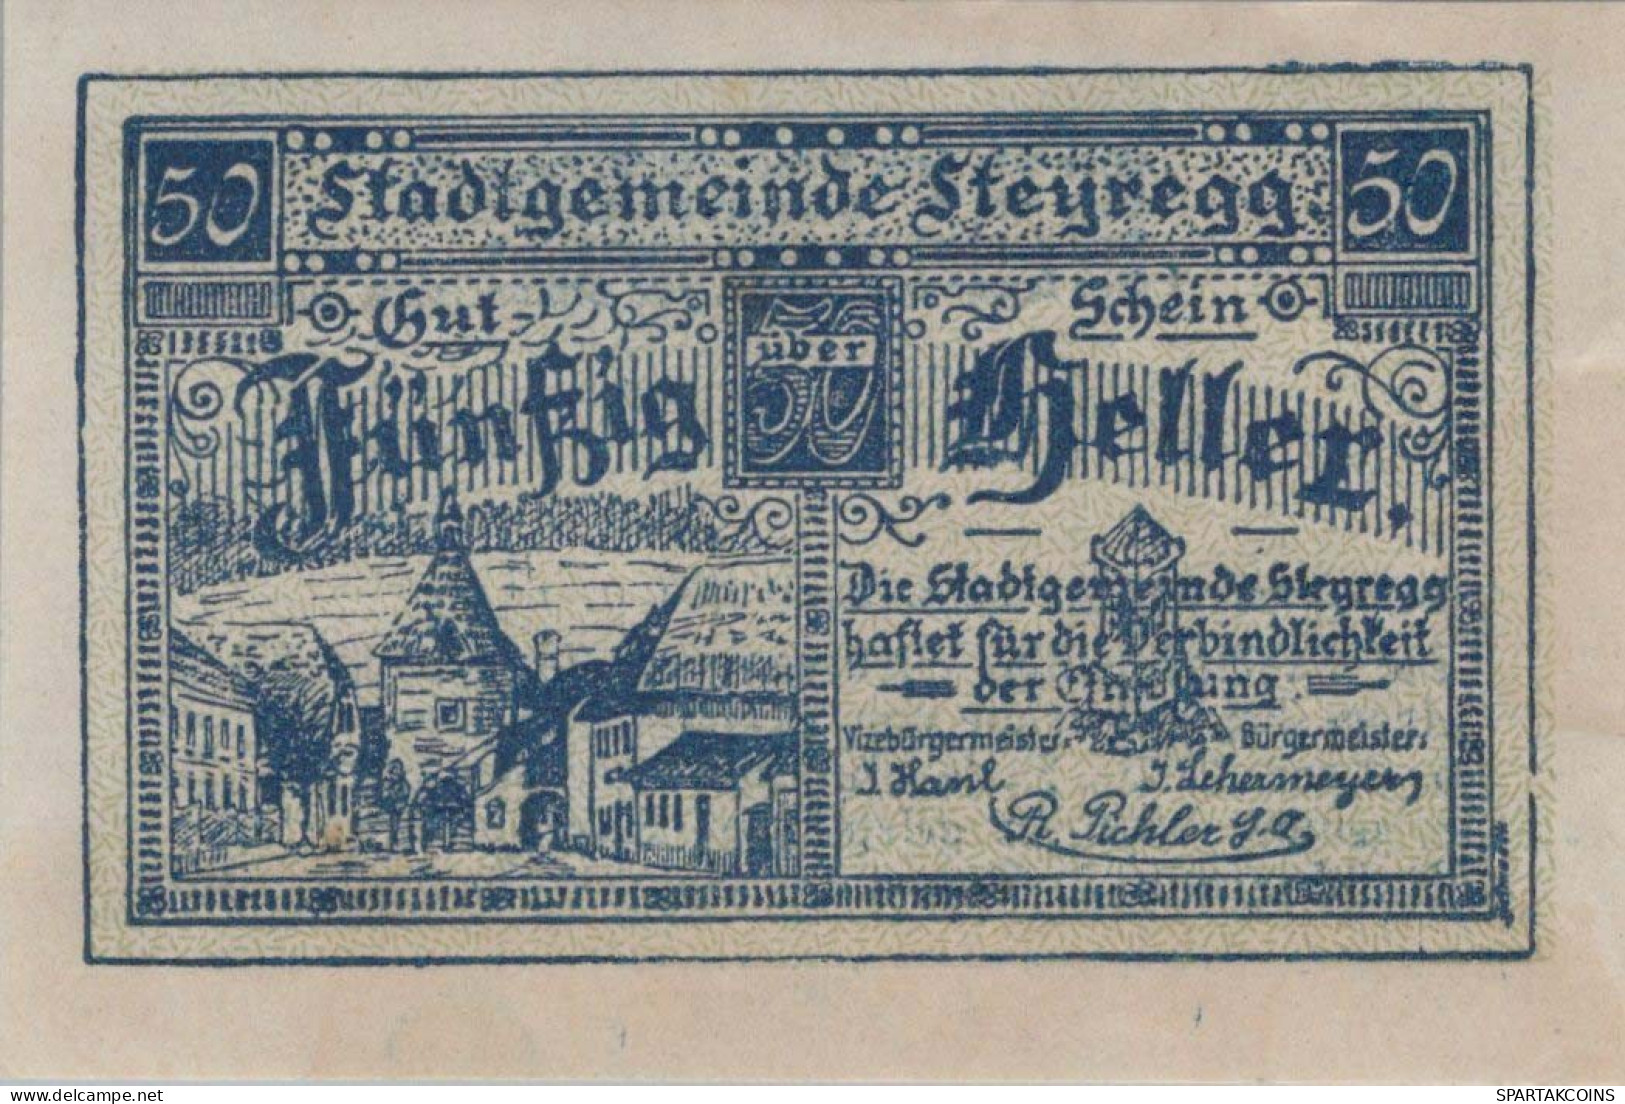 50 HELLER 1920 Stadt STEYREGG Oberösterreich Österreich Notgeld Banknote #PE614 - [11] Emisiones Locales